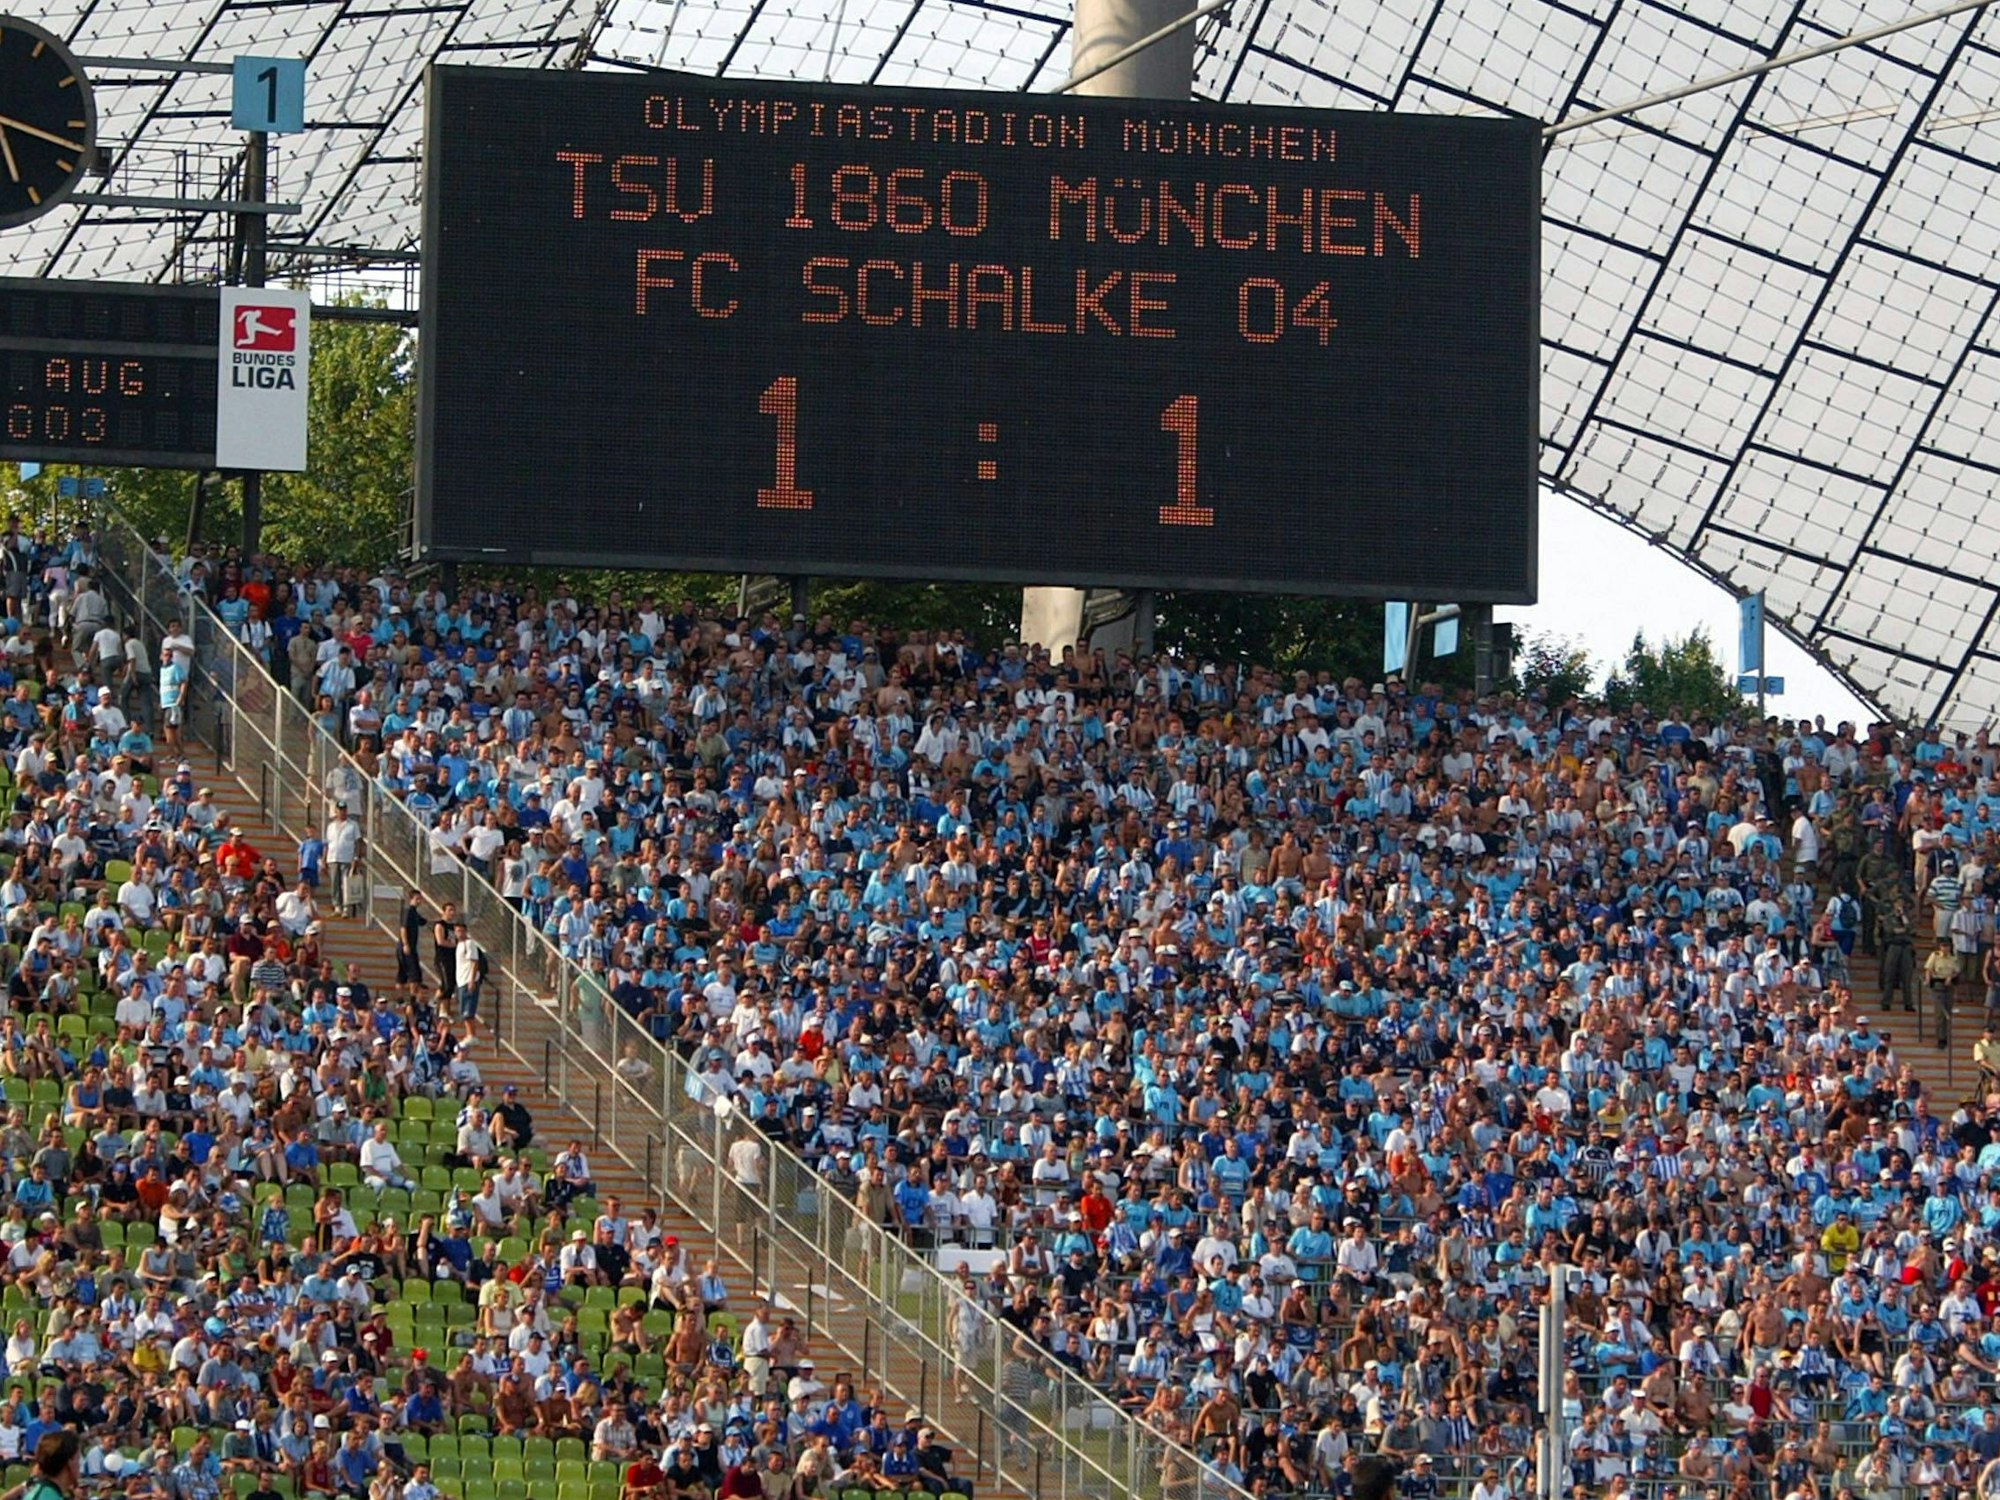 Das Bild zeigt die Anzeigetafel im Olympiastadion. Zwischen 1860 und Schalke steht es 1:1.